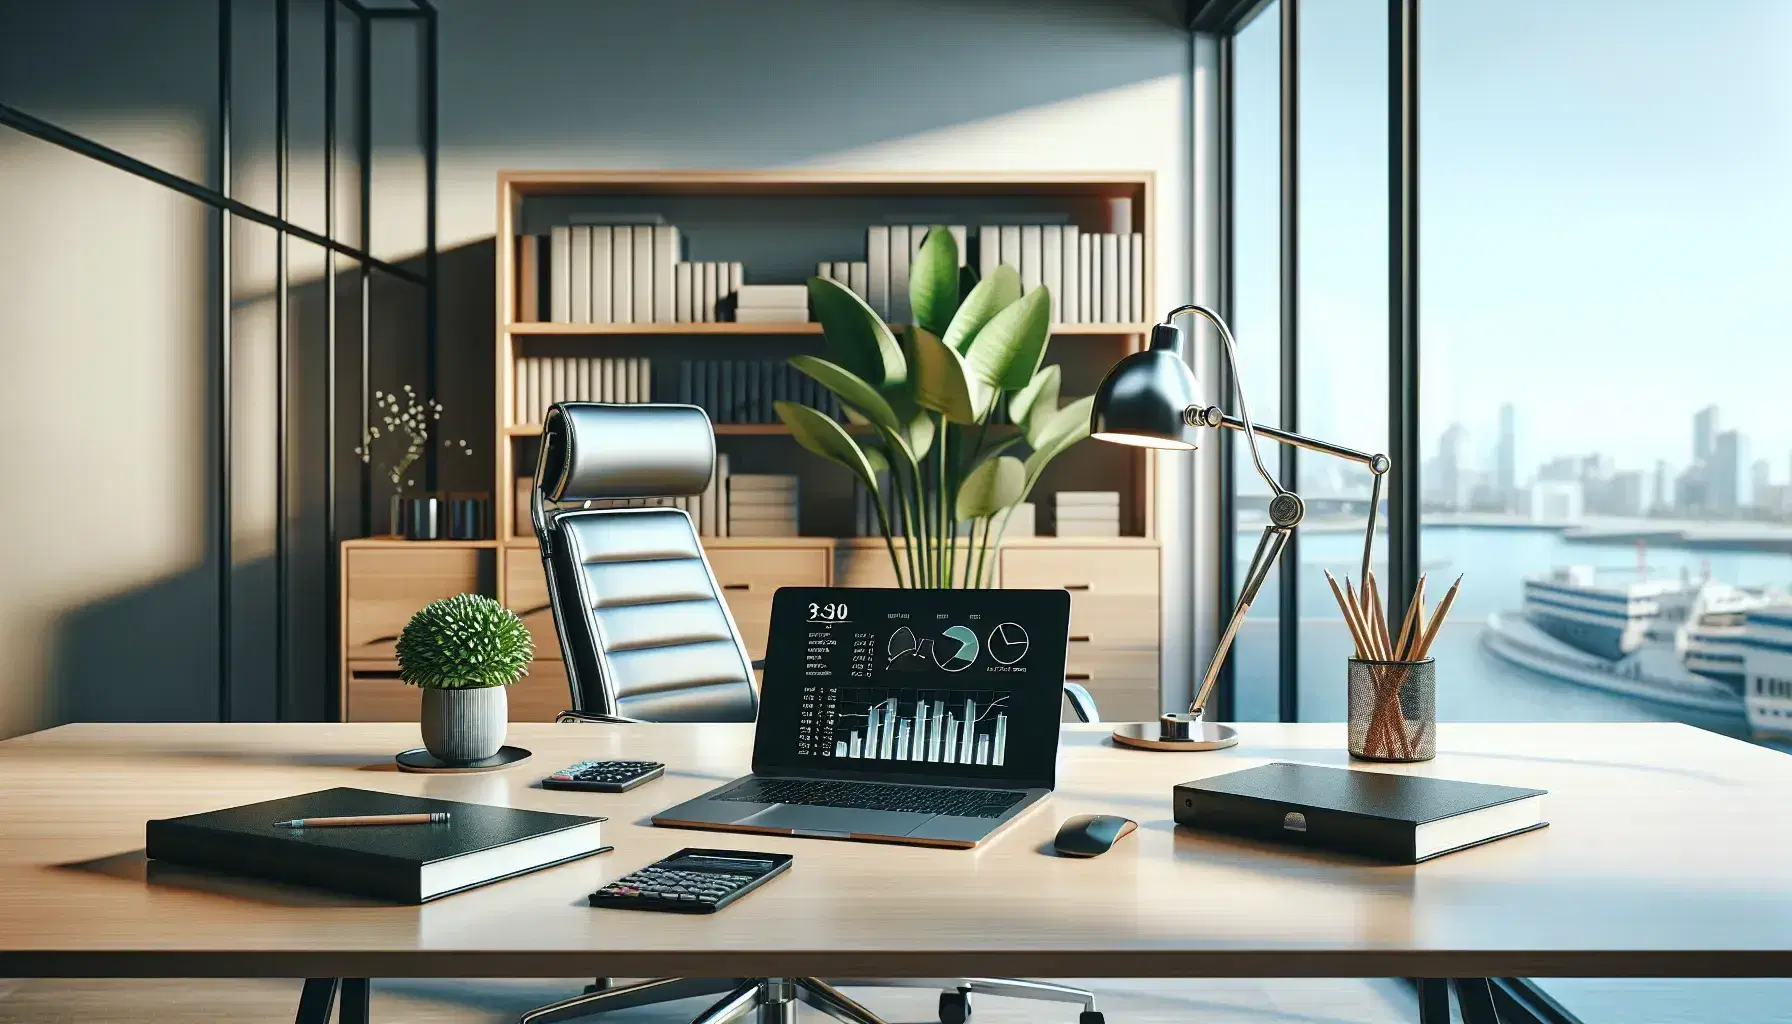 Oficina moderna y luminosa con mesa de madera, portátil con gráficos, calculadora, libreta y planta interior, silla ergonómica y estantería con carpetas.